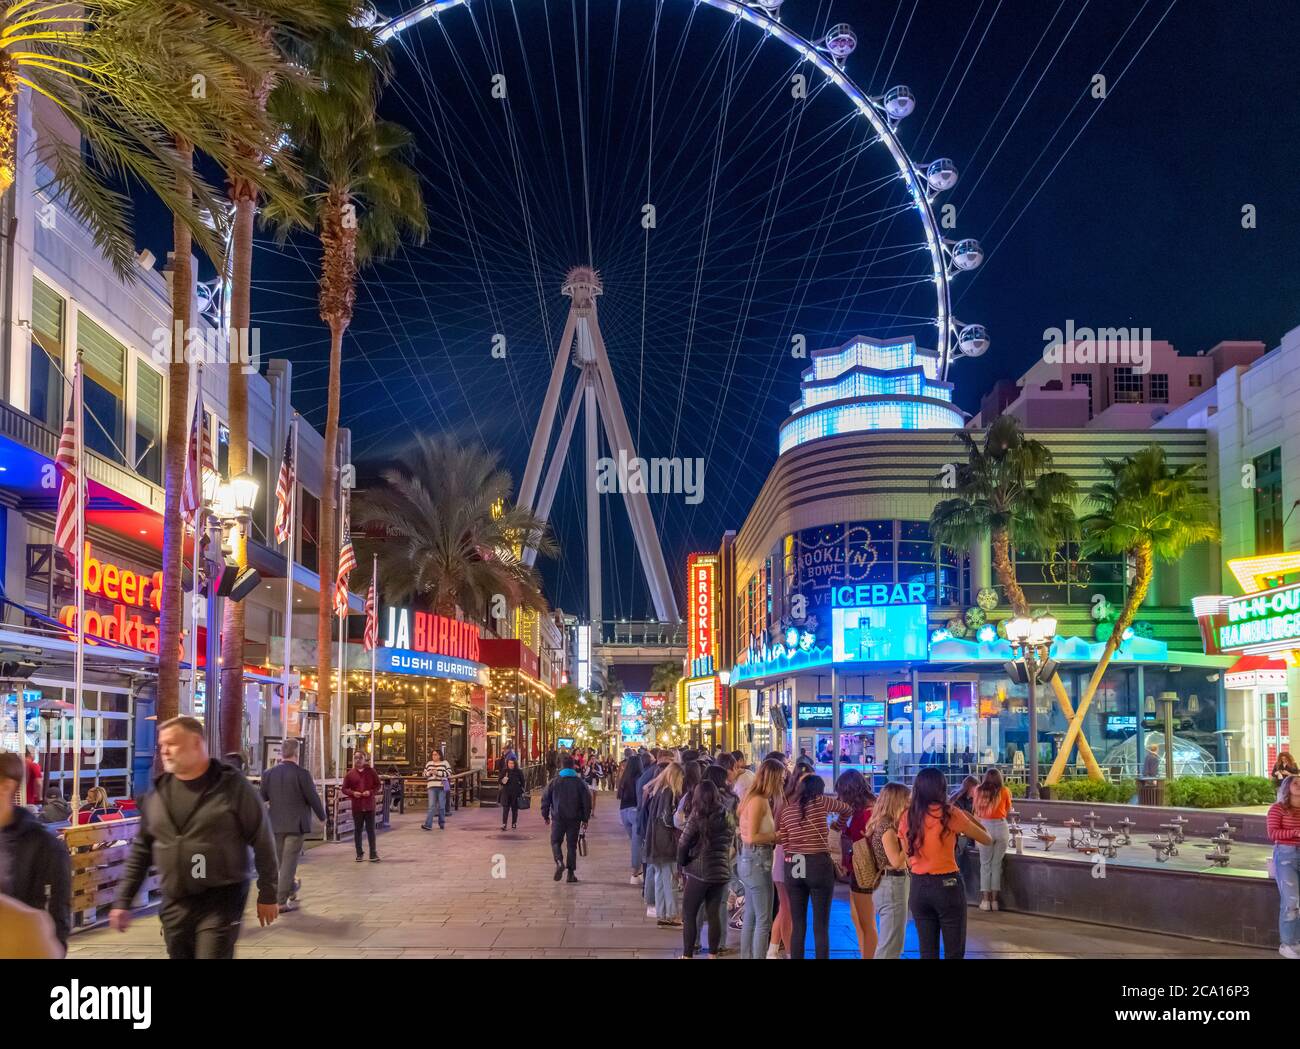 La promenade LINQ la nuit. Boutiques, bars et restaurants sur la promenade LINQ en direction de la grande roue de train High Roller, Las Vegas, Nevada, USA Banque D'Images